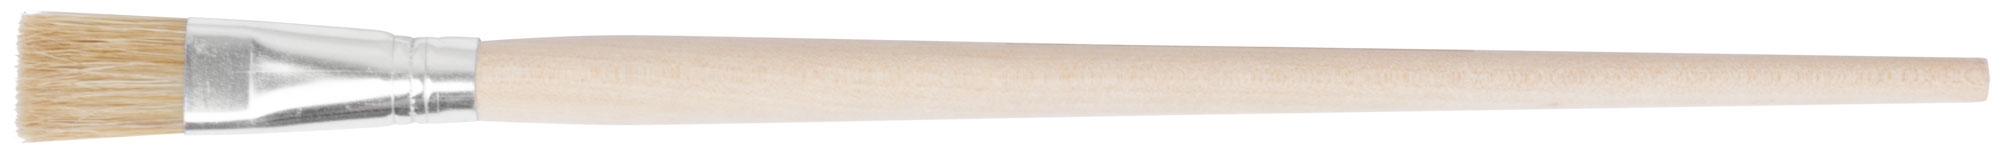 Кисть художественная плоская  № 10 ( 11 мм ) FIT 01253 кисть плоская hardy n35 натуральная щетина светлая длина ворса 45 мм деревянная ручка 1 5